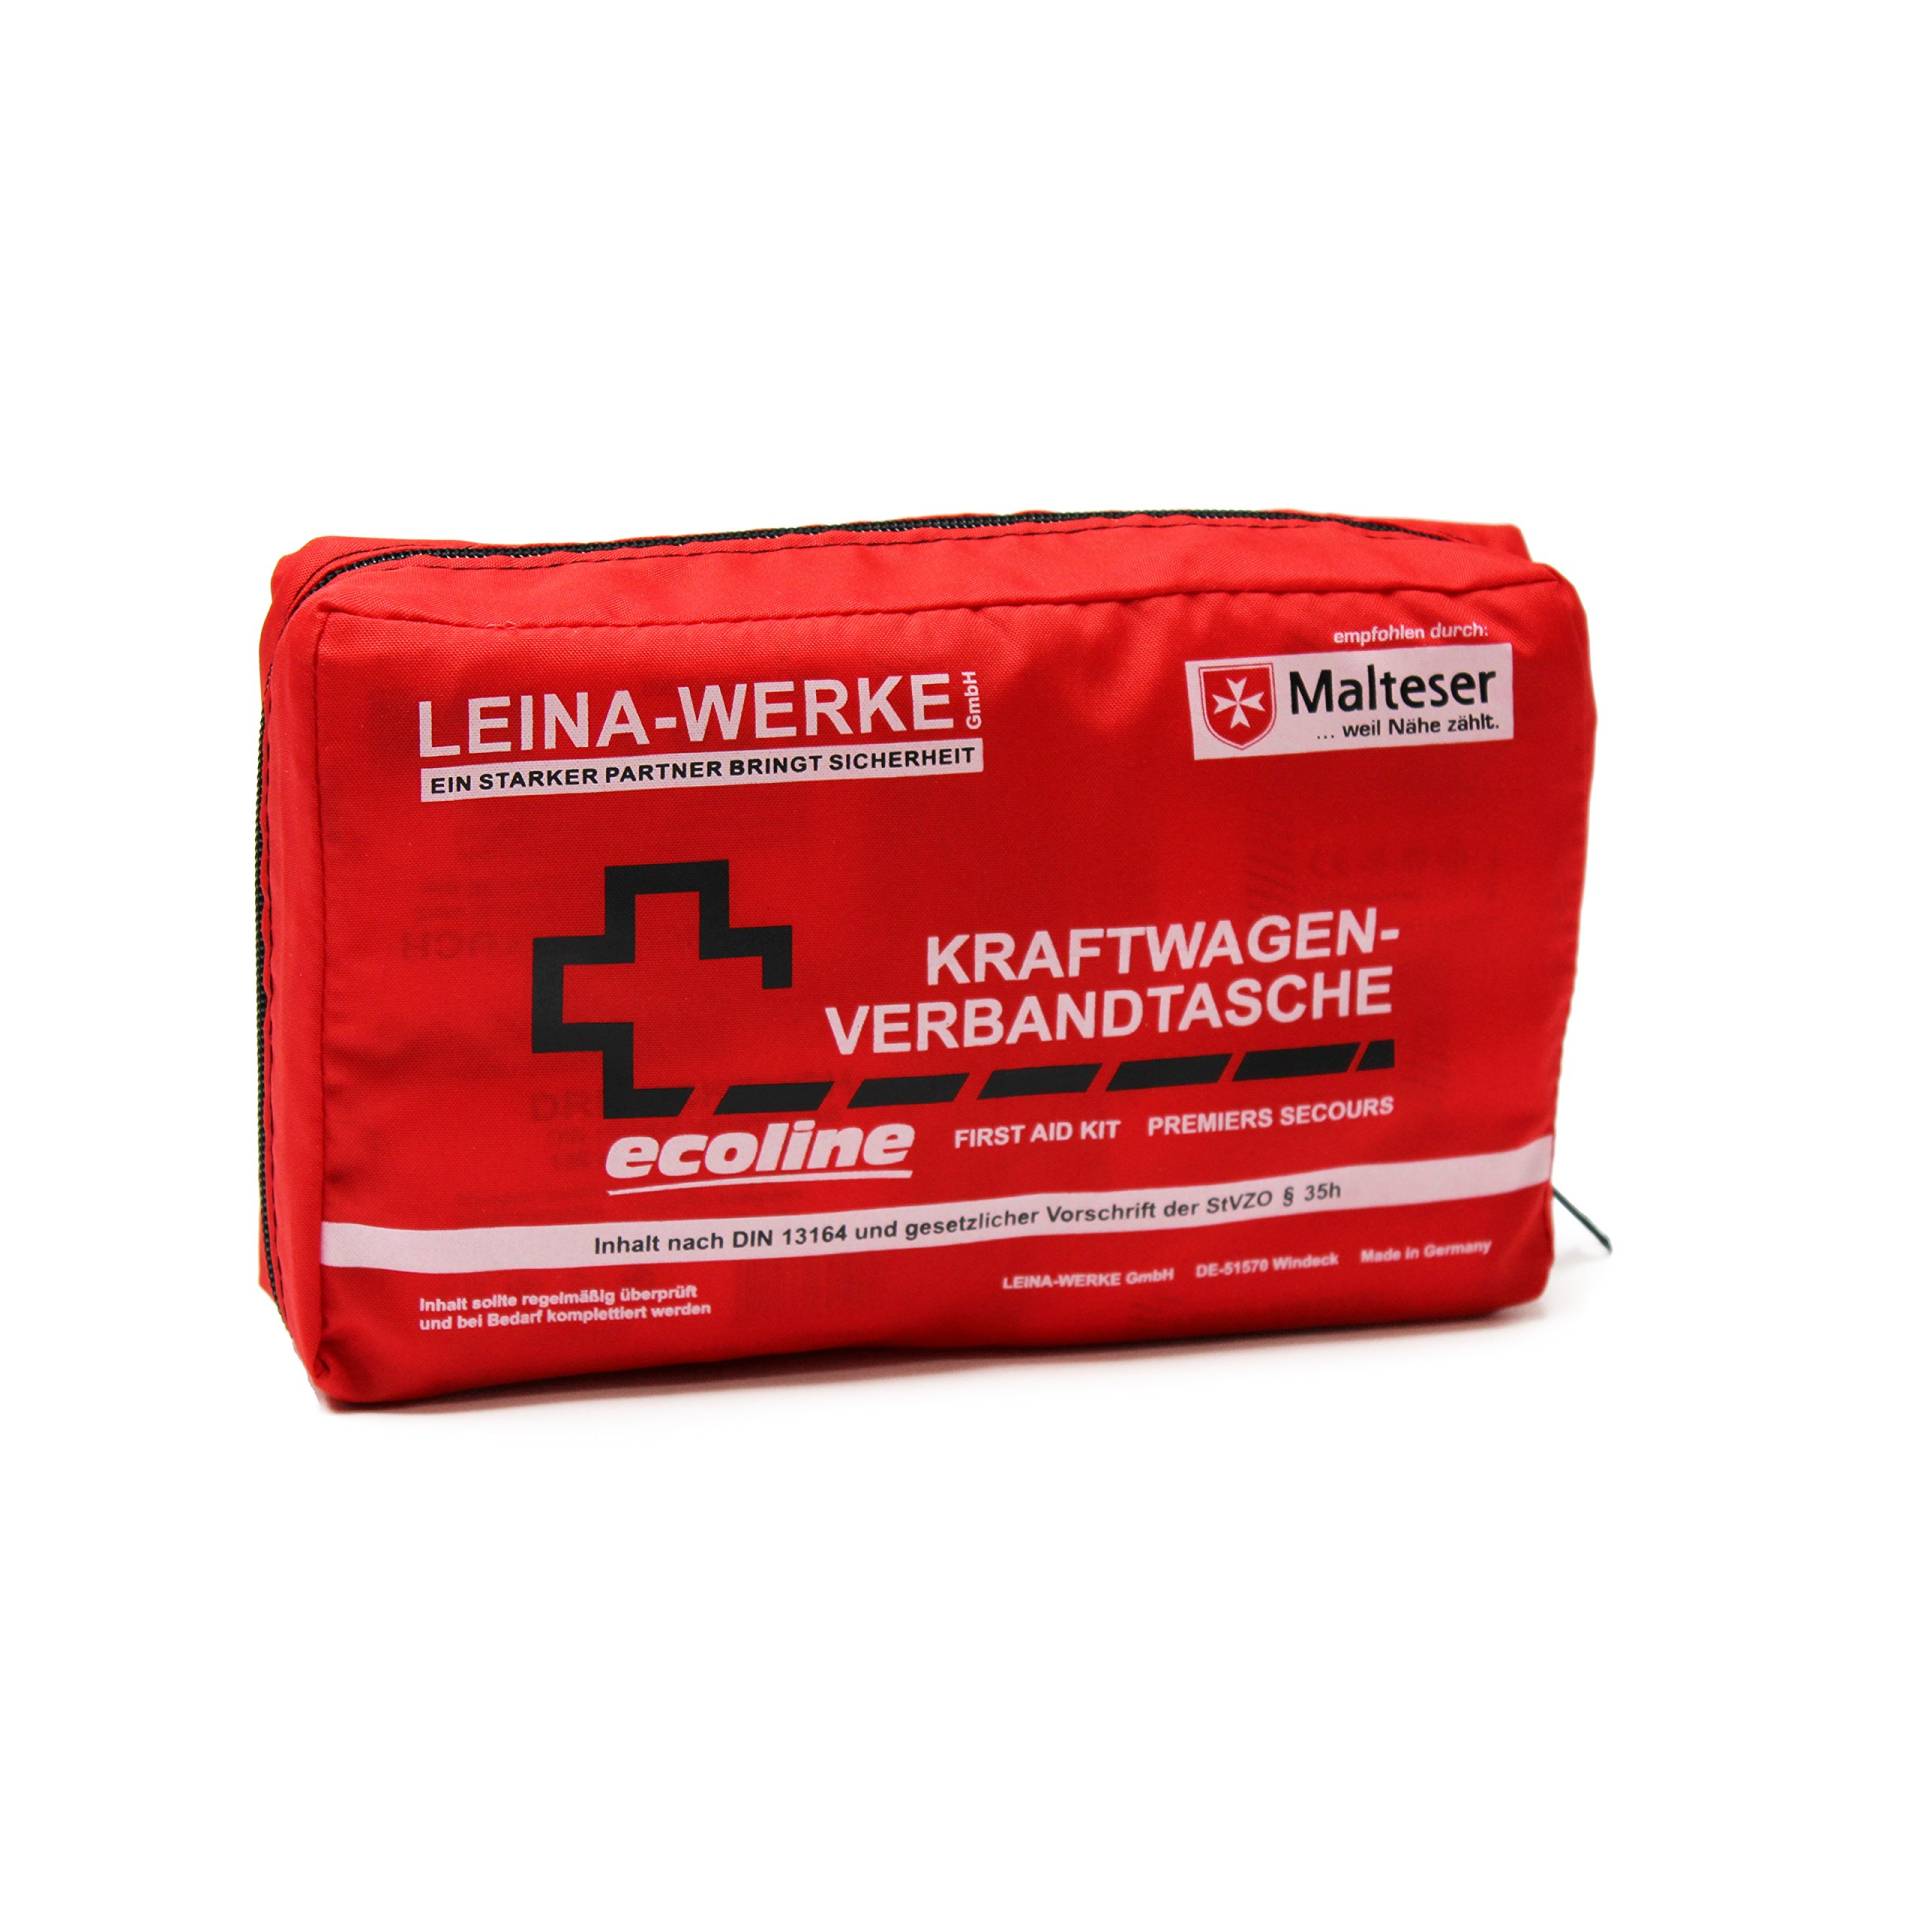 Leina-Werke 11040 KFZ-Verbandtasche Compact Ecoline ohne Klett, Rot/Schwarz/Weiß von LEINA-WERKE